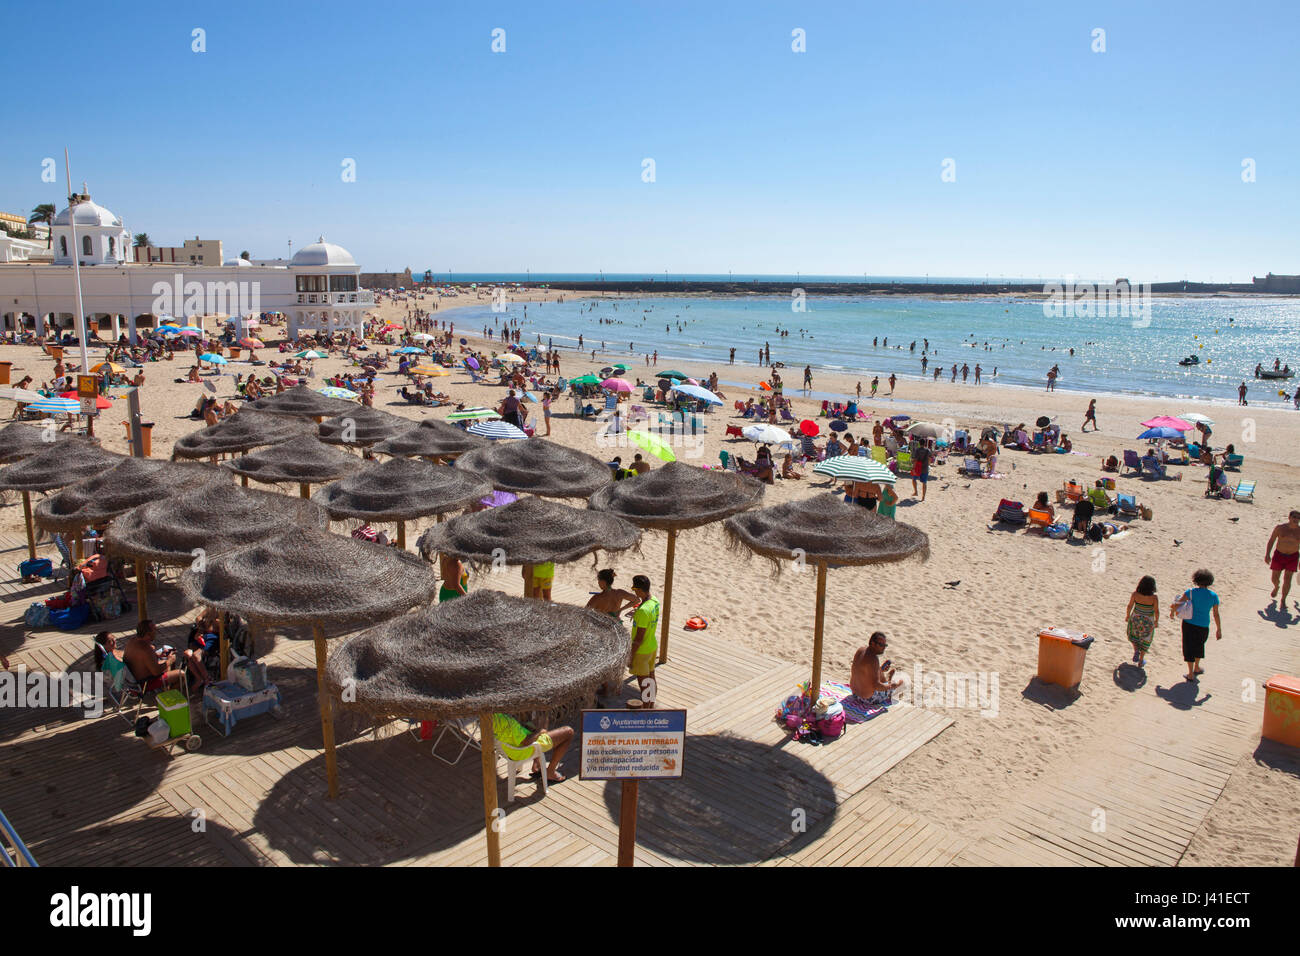 La Caleta Beach in the historical town of Cadiz, Costa de la Luz, Cadiz Province, Andalusia, Spain, Europe Stock Photo